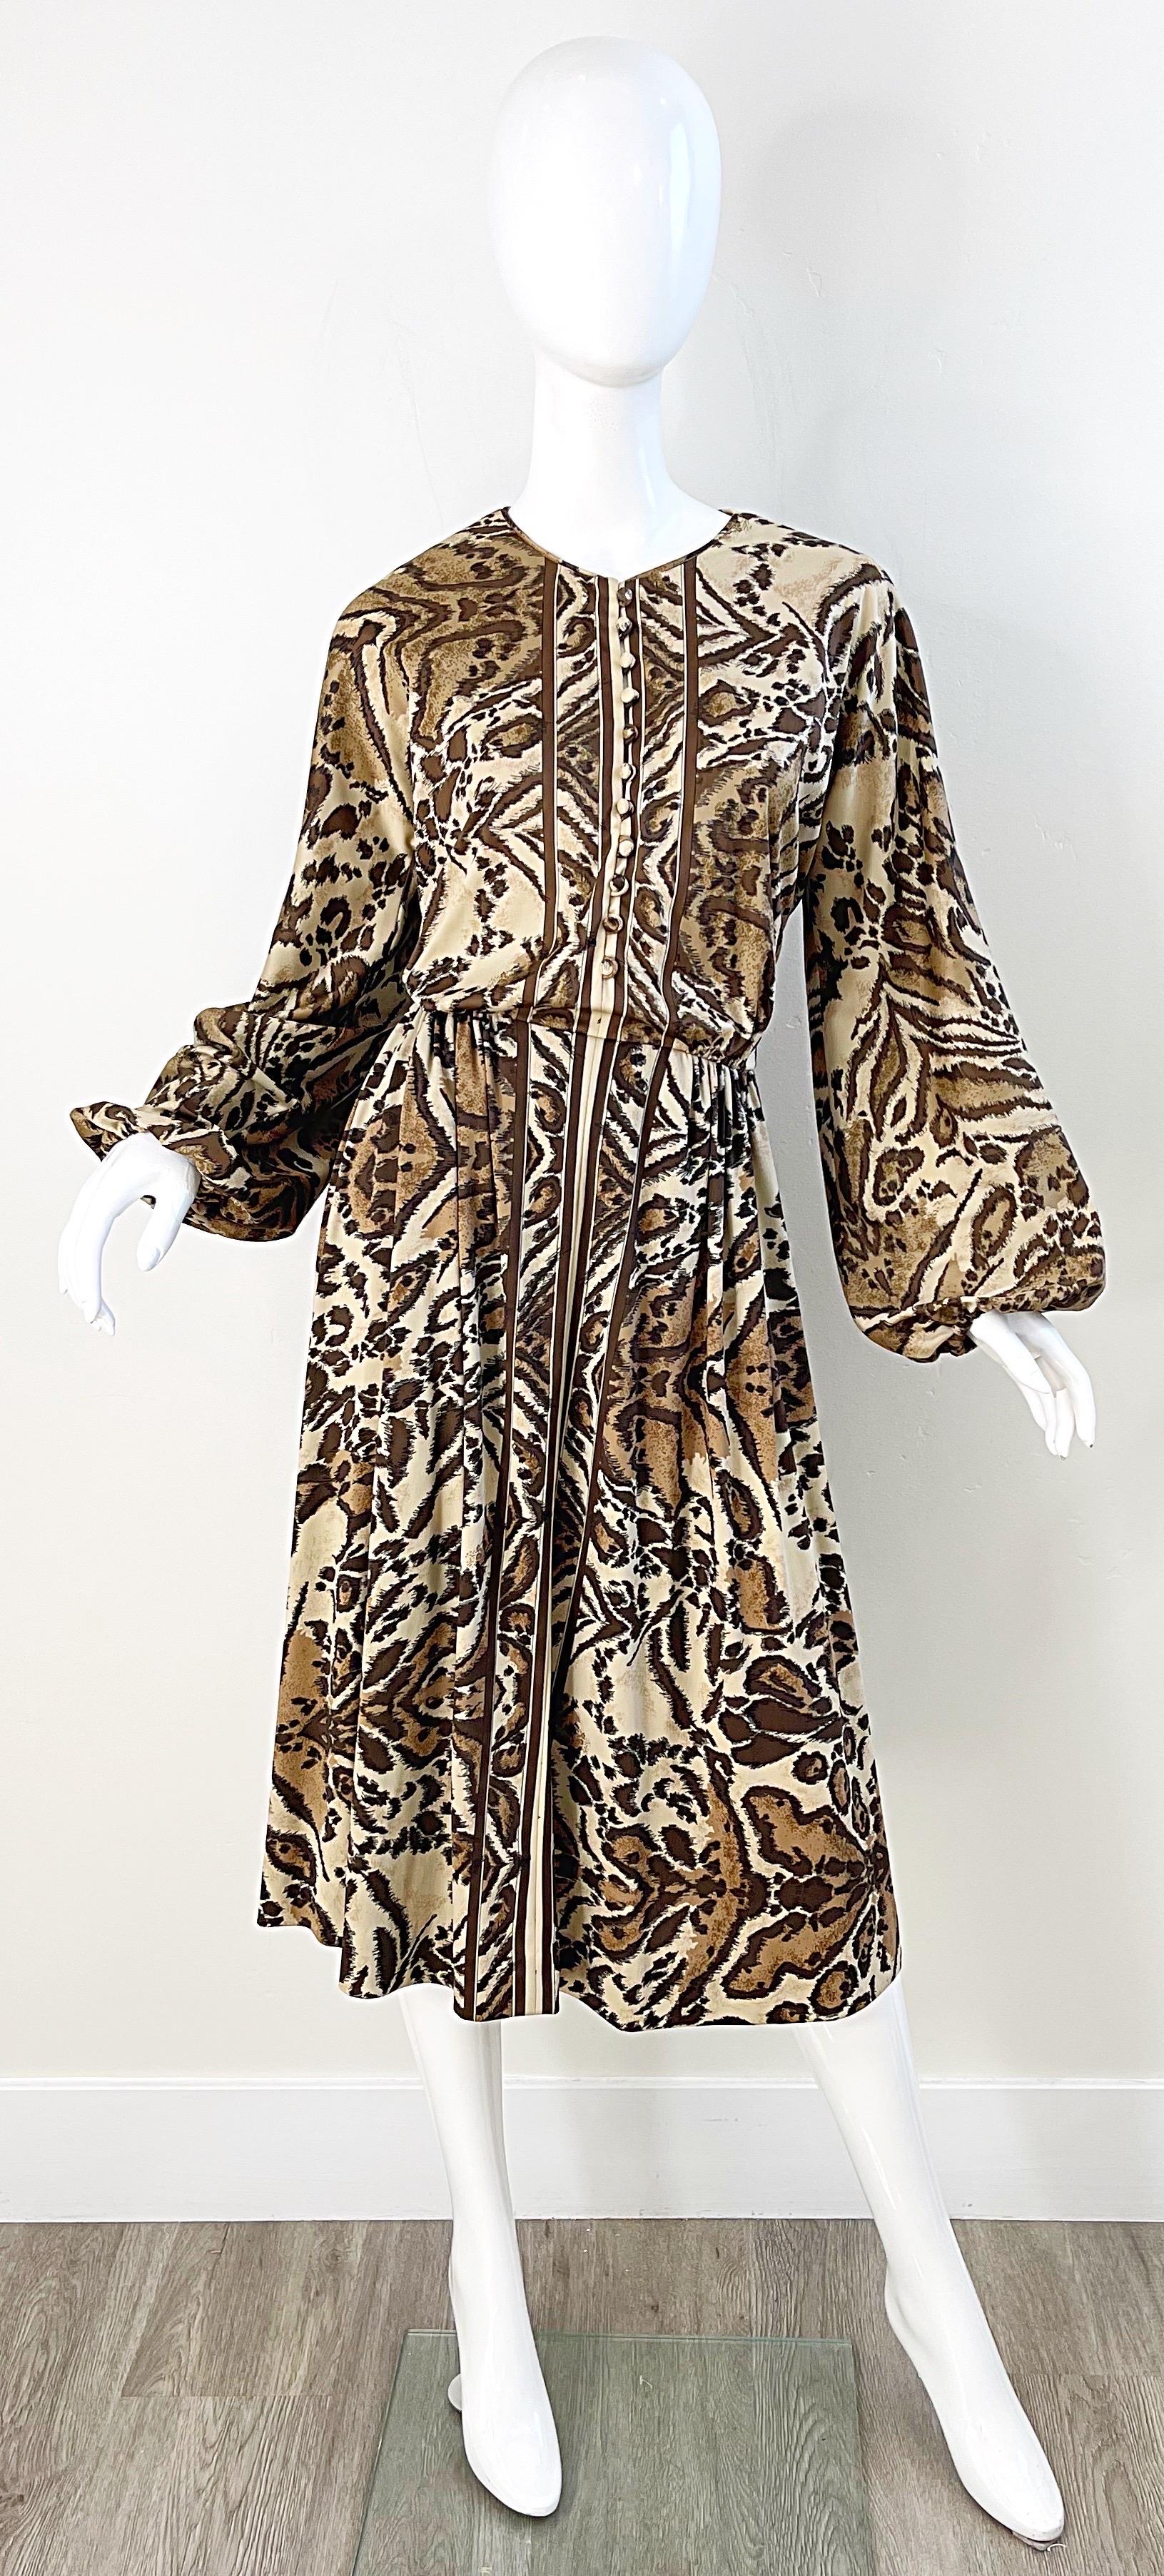 Chic robe à manches longues VICTOR COSTA des années 1970, imprimé léopard animal ! Boutons recouverts de tissu sur le devant. Corsage ajusté avec une jupe flatteuse et indulgente. Poches de chaque côté de la taille. Fermeture à glissière cachée dans